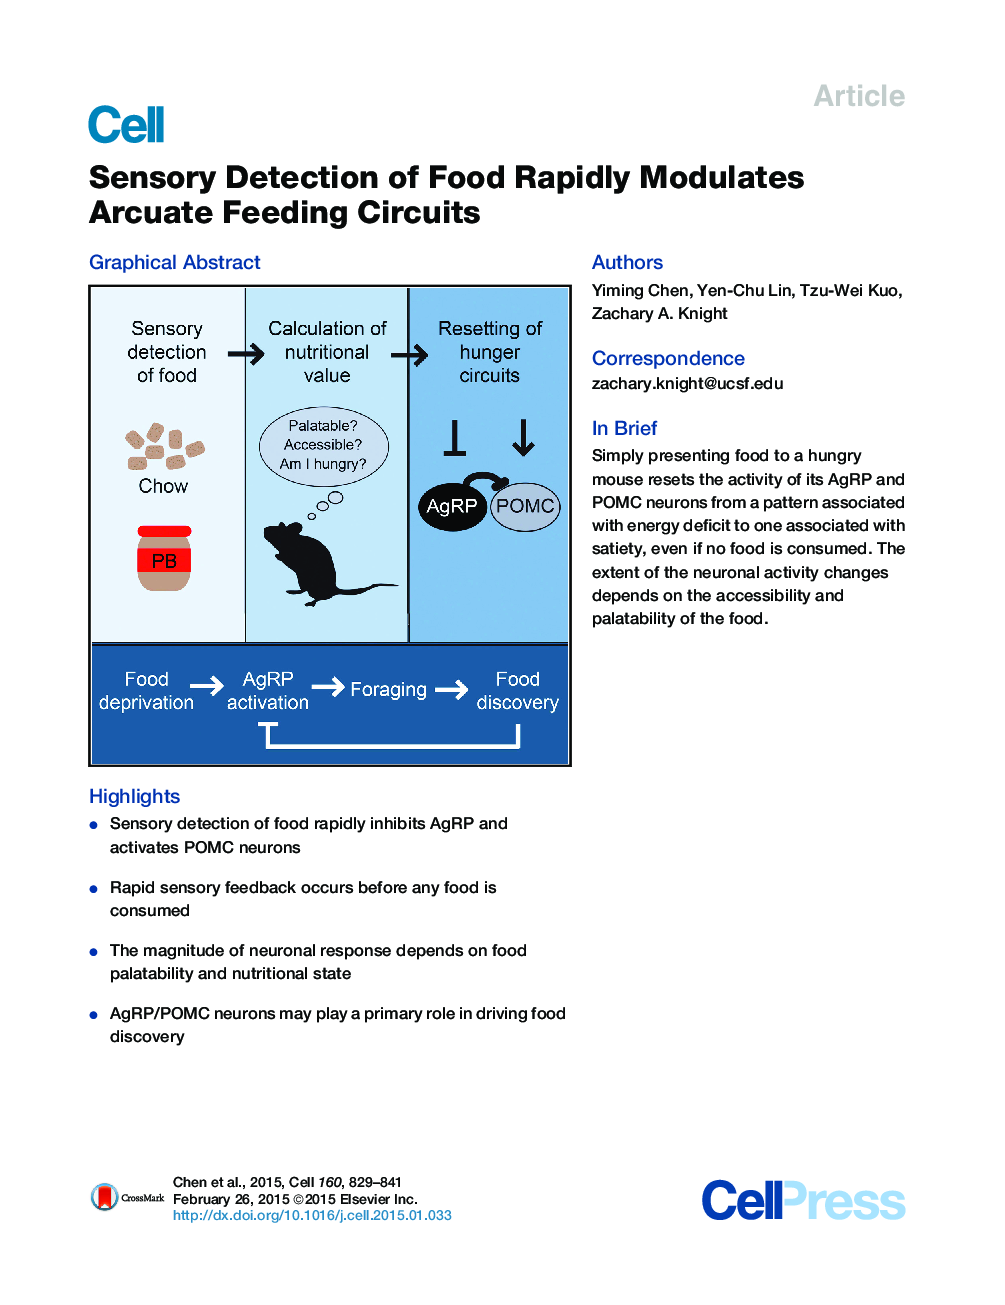 تشخیص حساسیت غذا به سرعت به مدارهای تغذیه آراموته مجهز است 